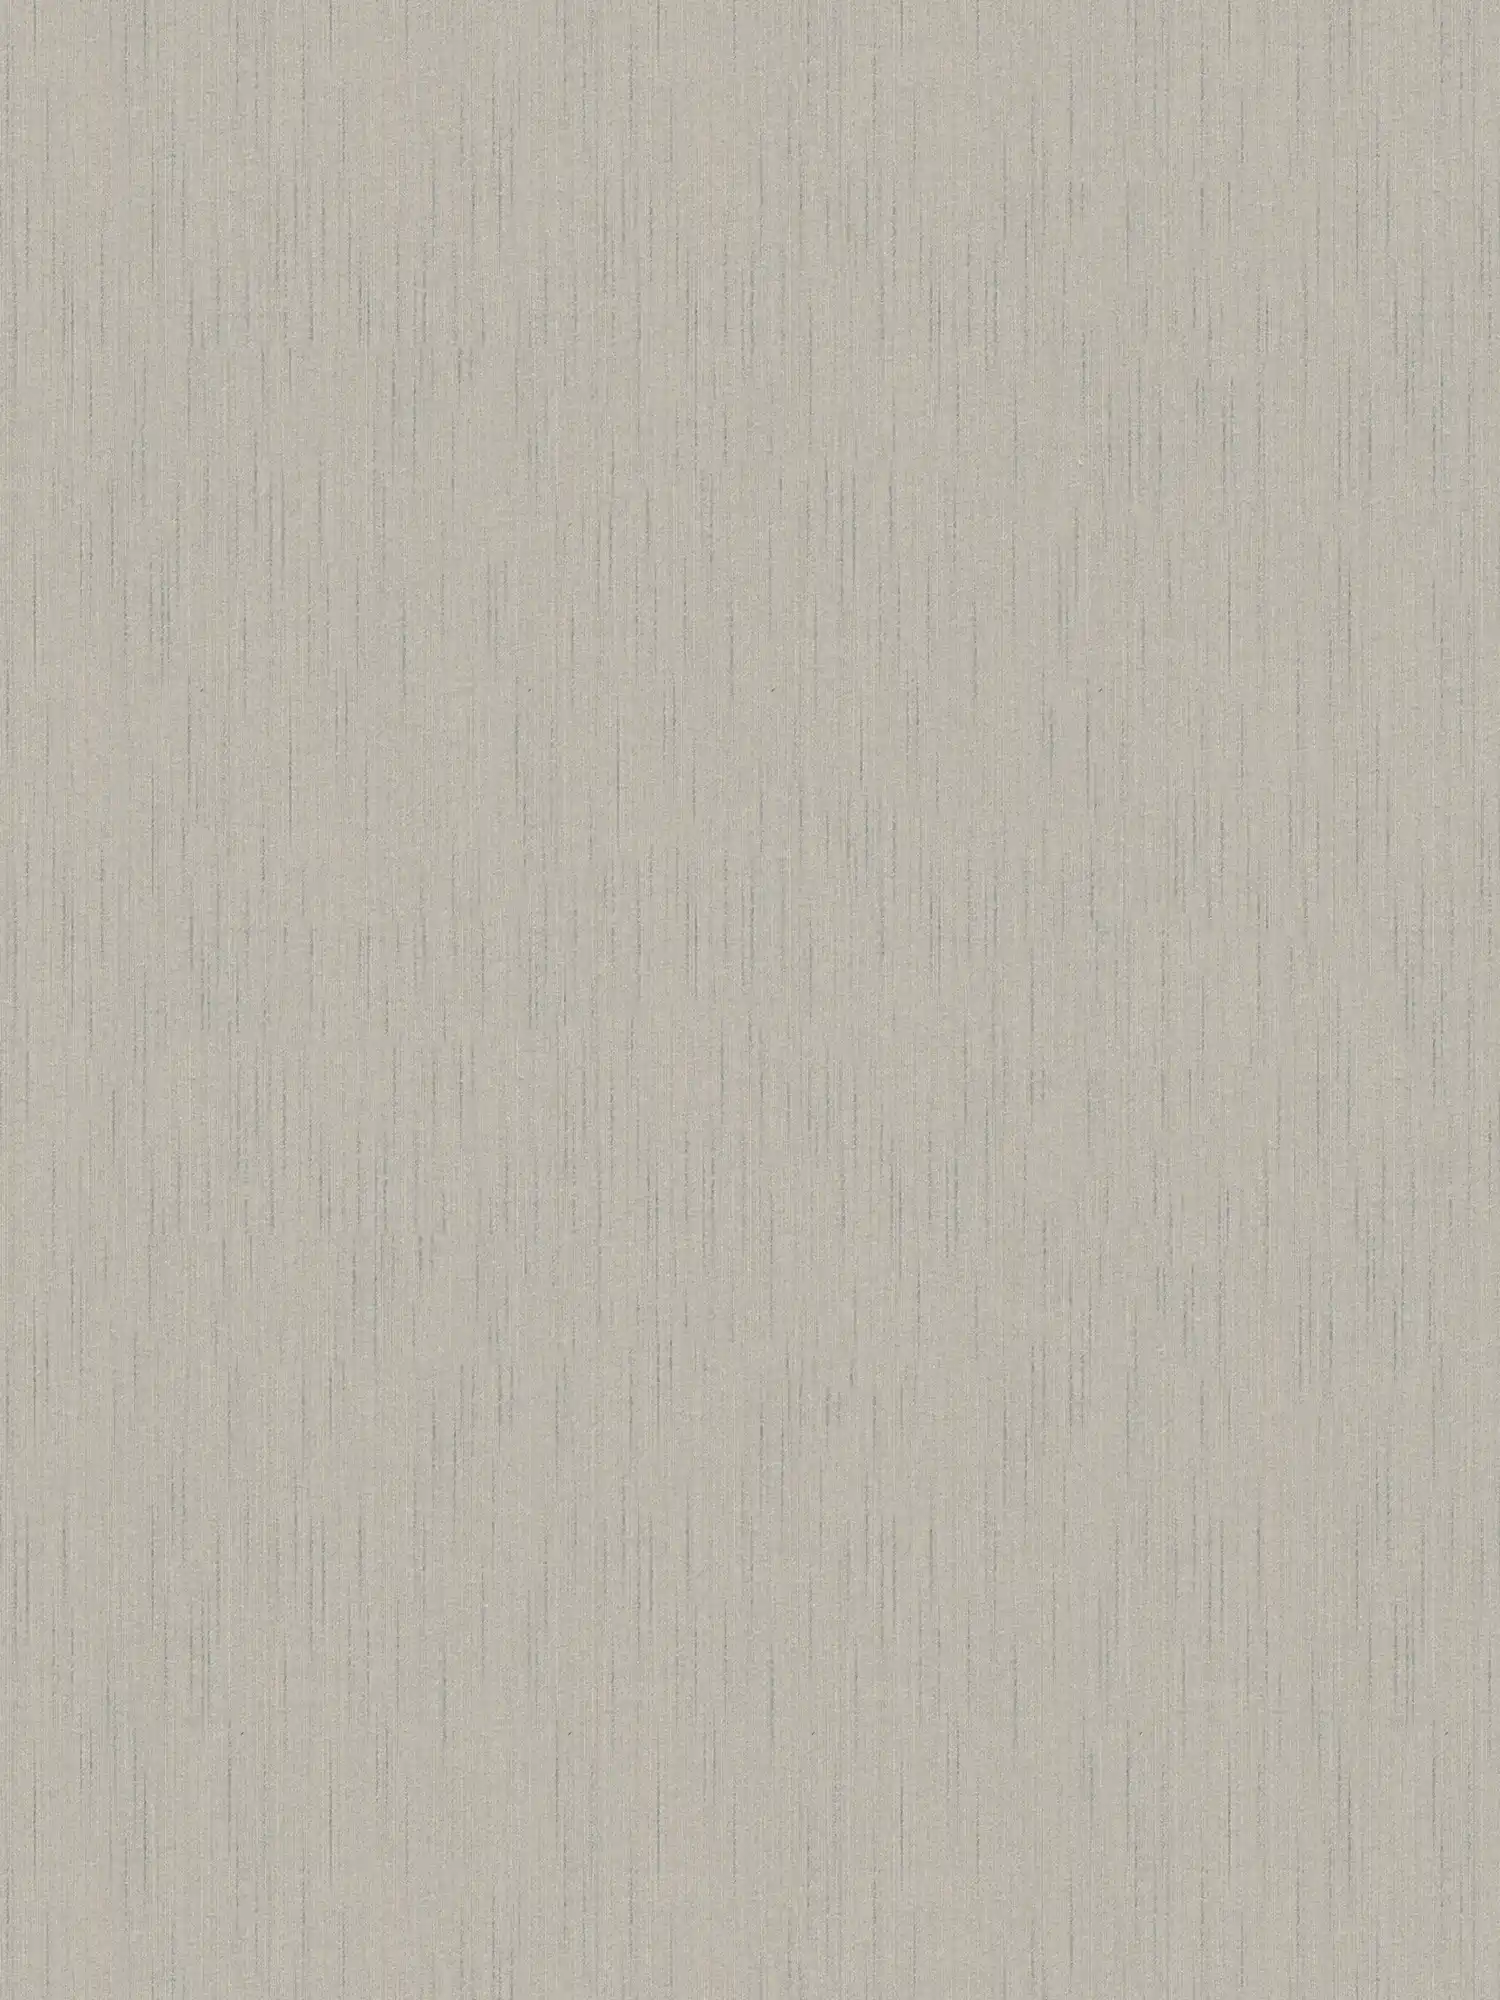 Papier peint gris avec effet textile chiné & finition satinée
